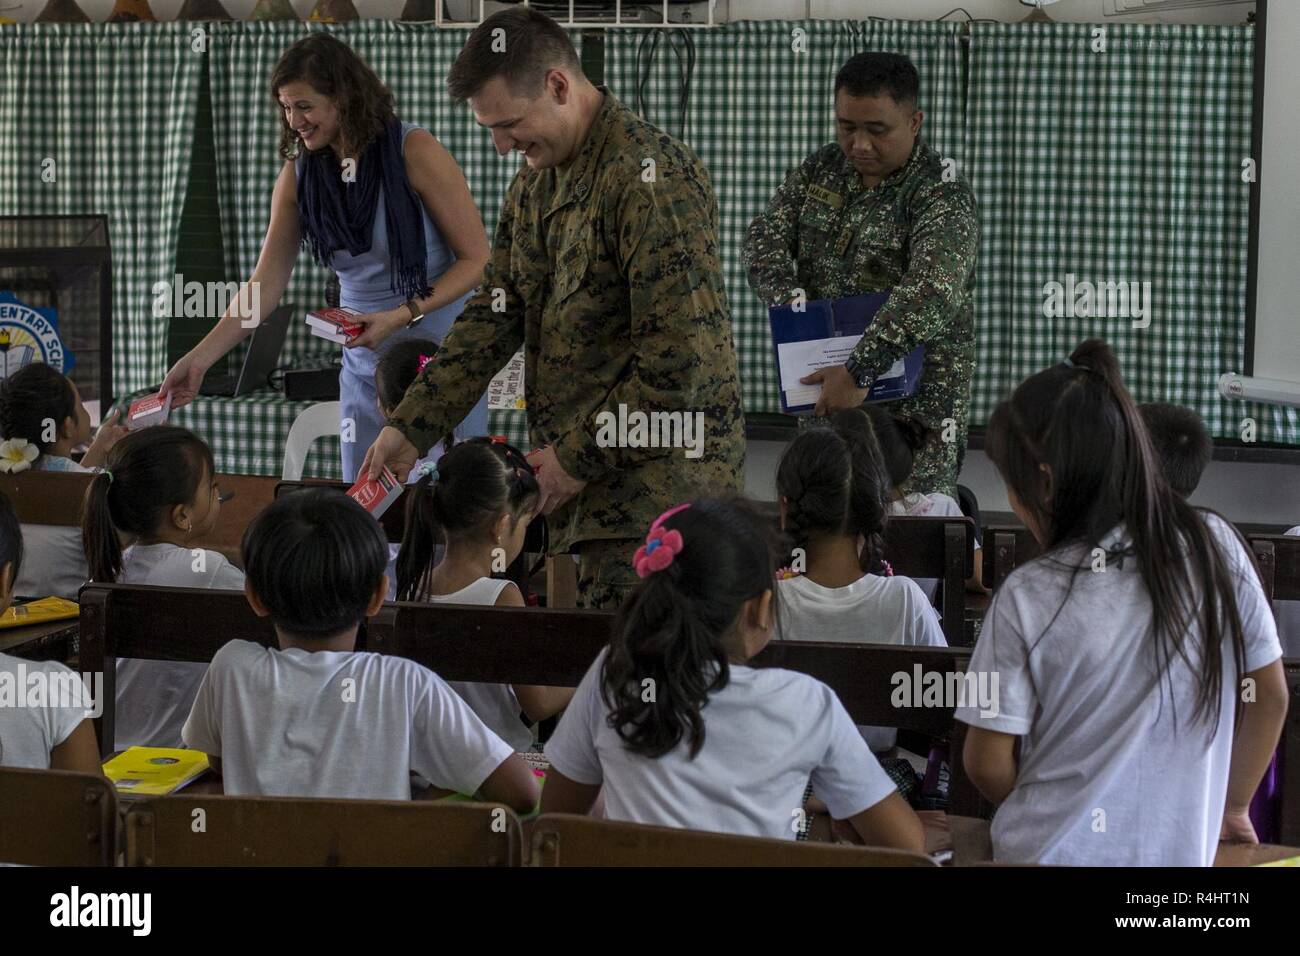 Lokale, die die Studierenden erhalten, Wörterbücher, die während der Übung 2 KAMANDAG in Ternate, Cavite, Philippinen, Oct 3, 2018. KAMANDAG 2 ist eine Routine Übung, die Marines das humanitäre Interesse unserer philippinischen Partner zu unterstützen. Stockfoto